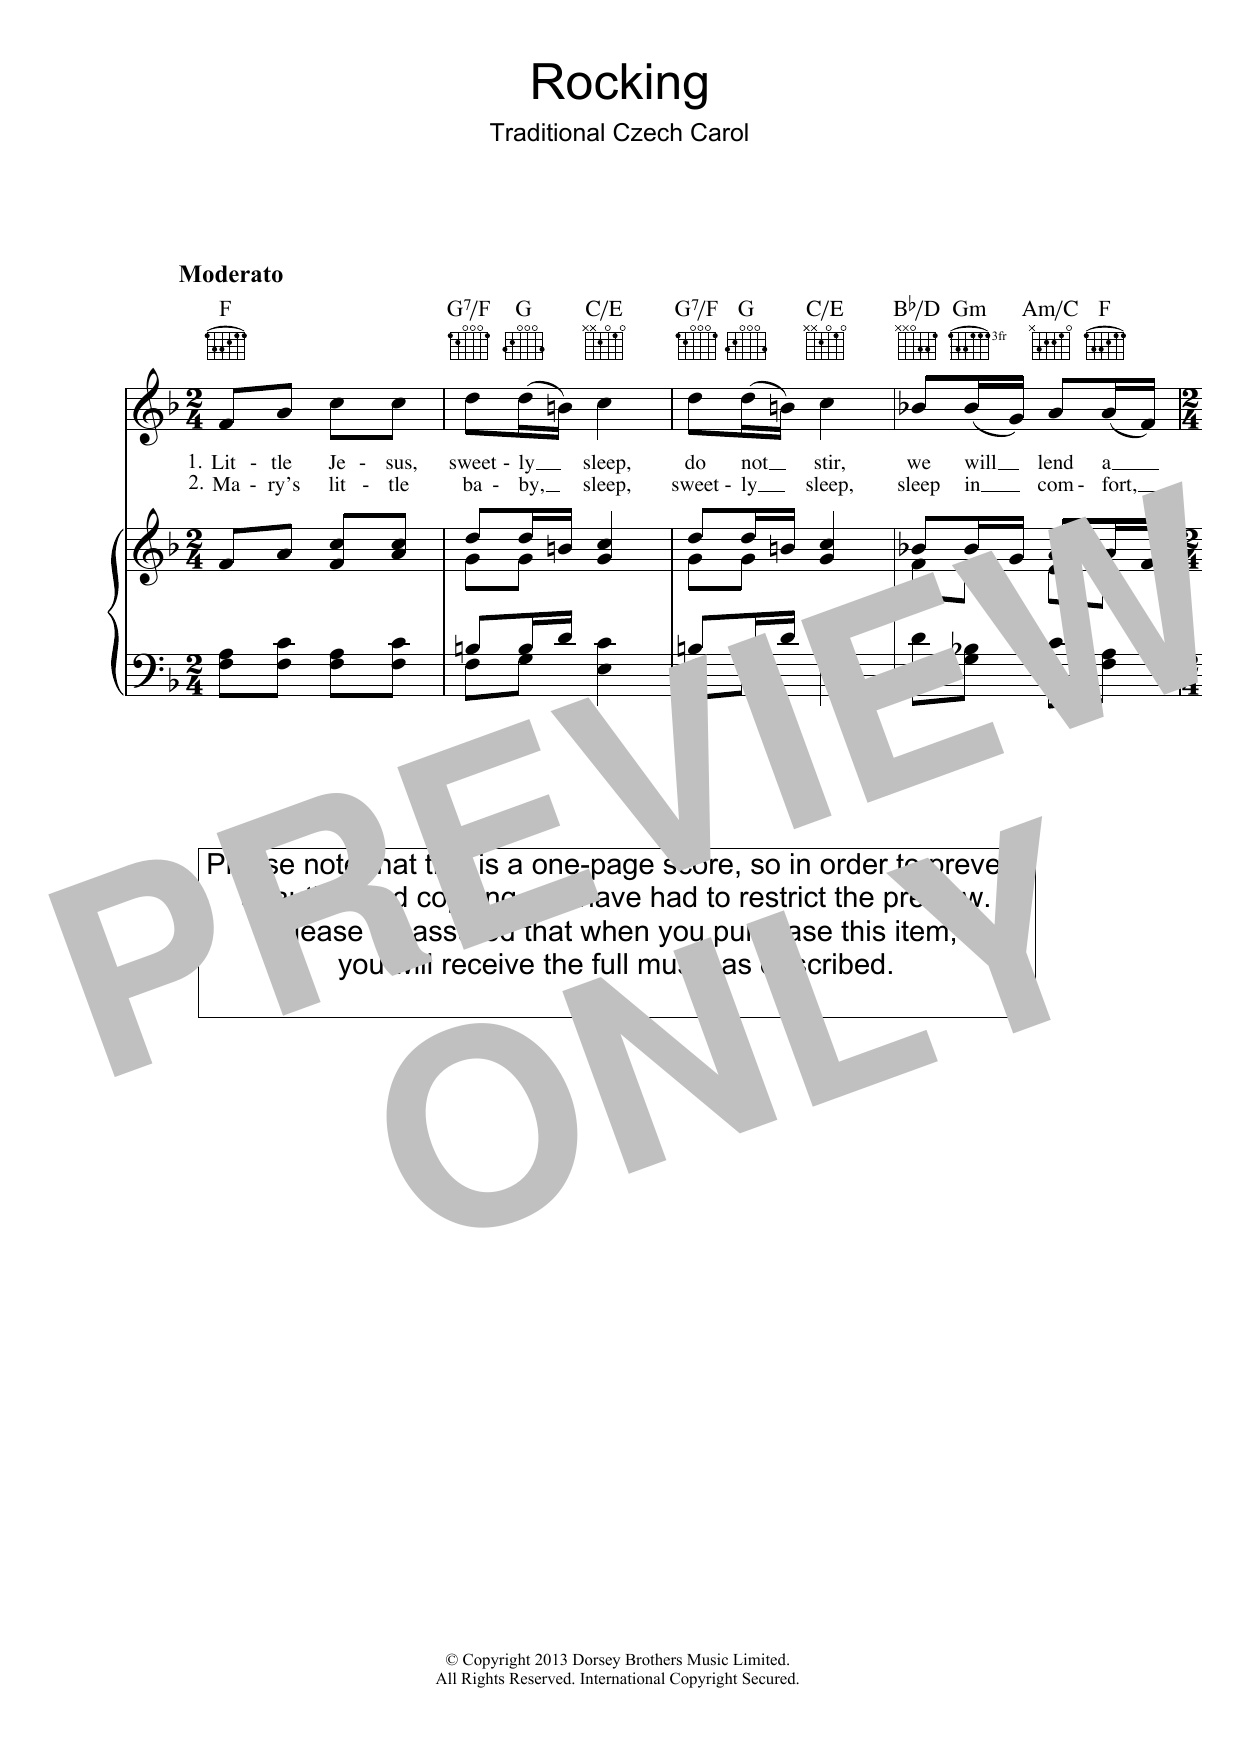 Christmas Carol Little Jesus (Rocking Carol) sheet music notes and chords. Download Printable PDF.